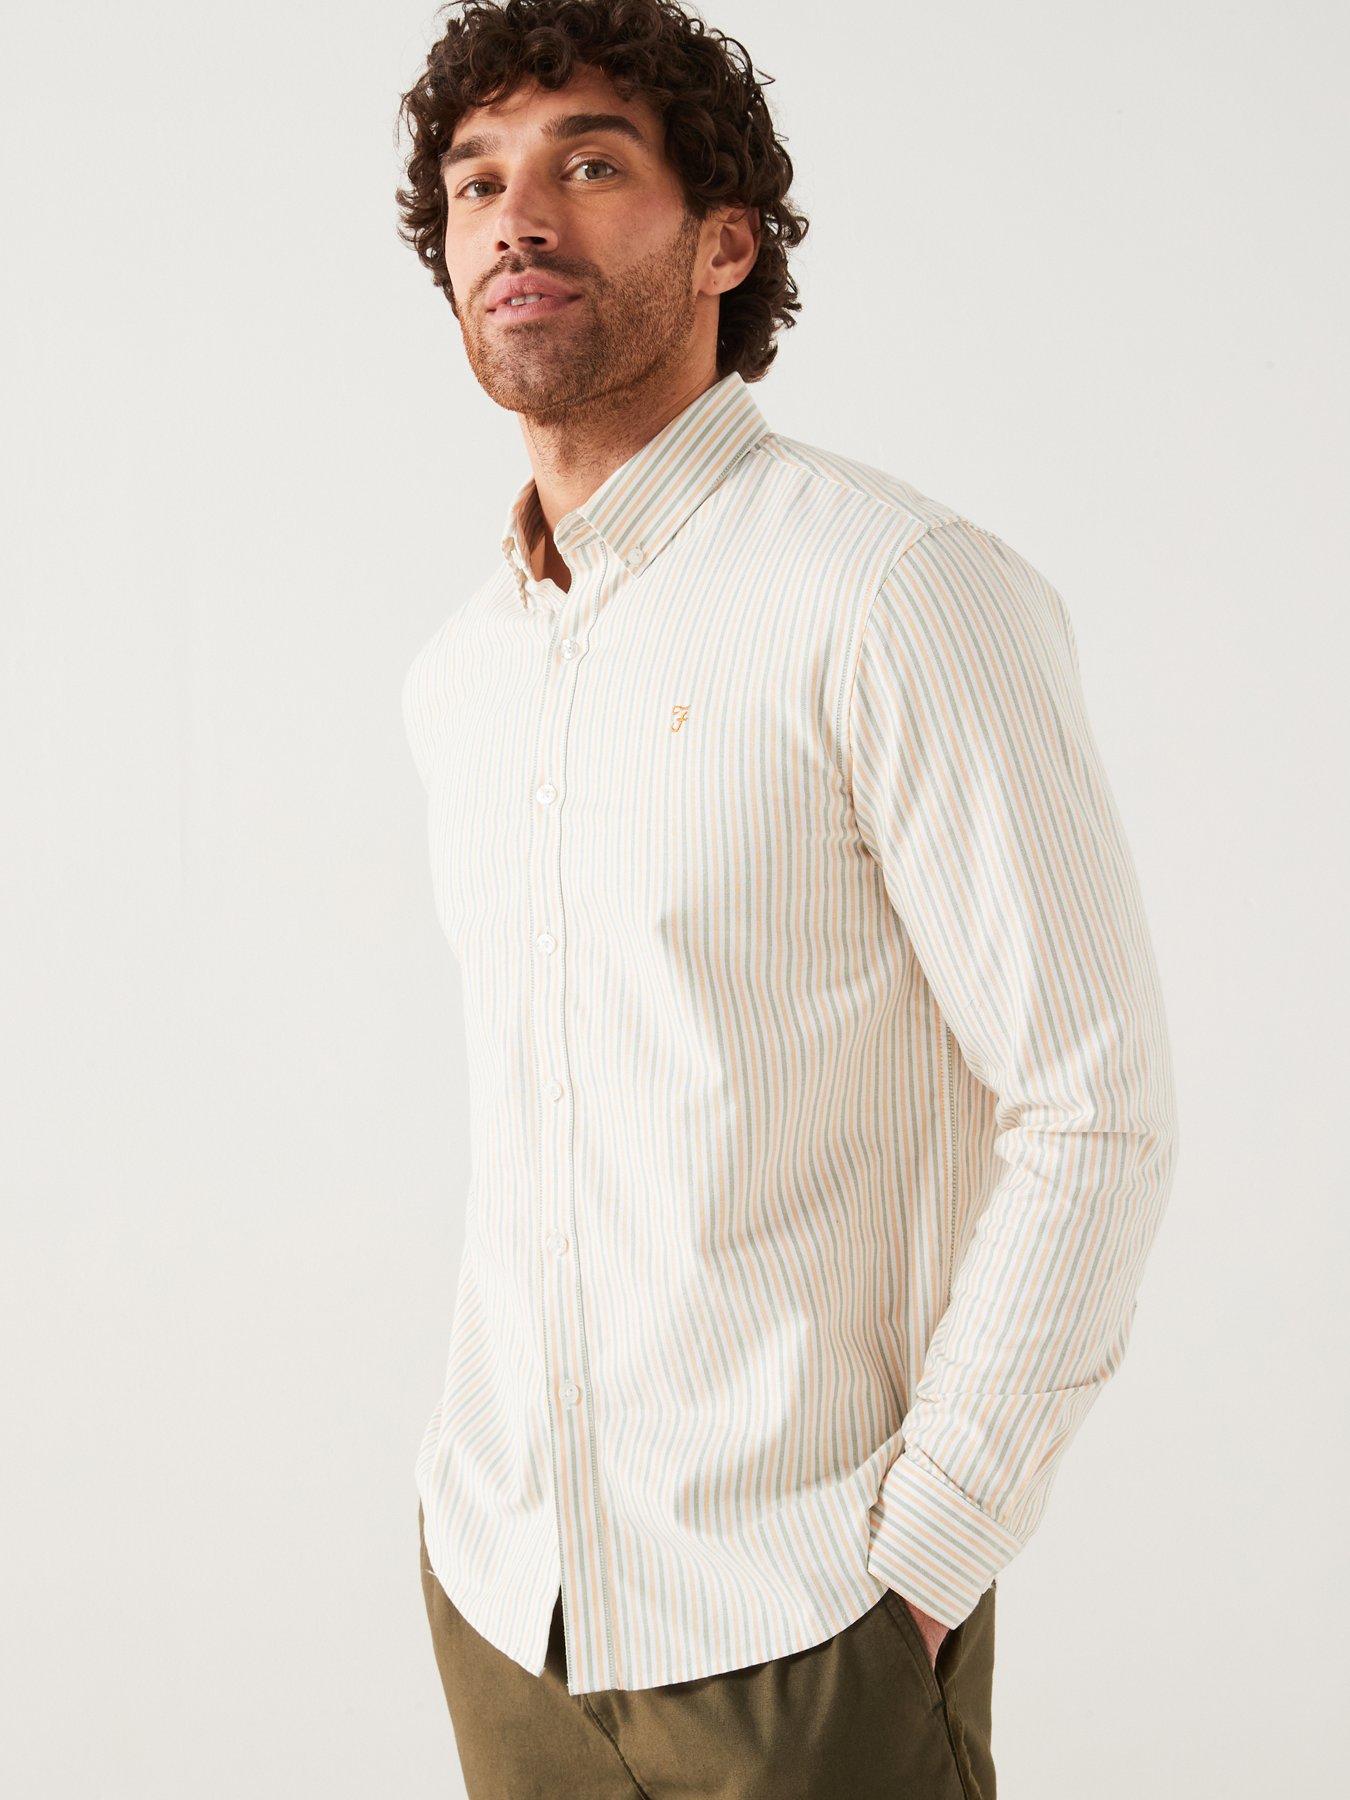 Men Tshirt Long Sleeve Regular Fit 520 for Gym-White/Blue